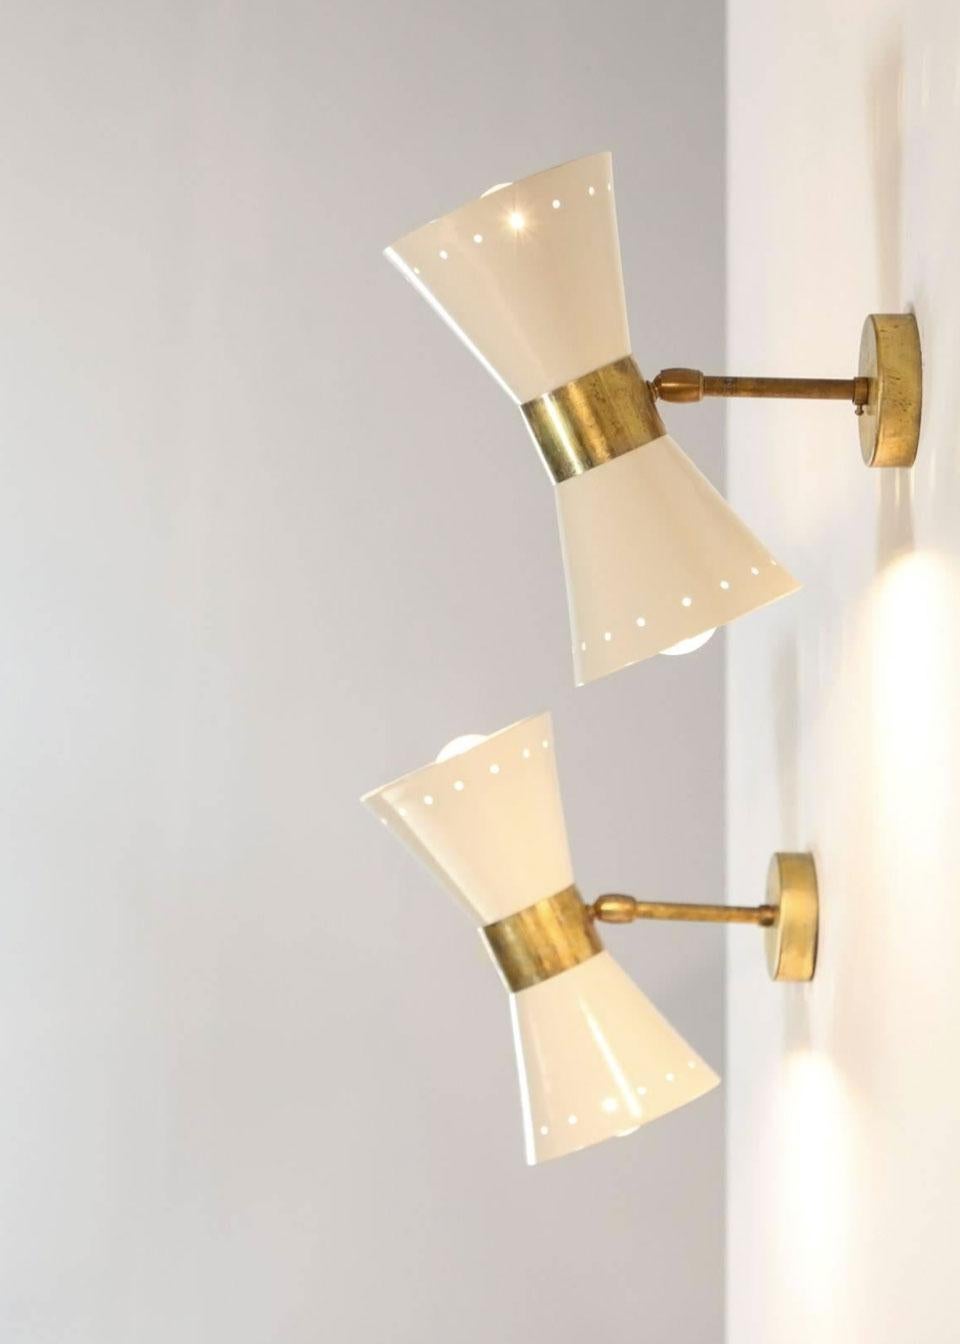 1 of 6 Italian Modern Design Wall Light Sconces Stilnovo Style Ivory White Brass 2